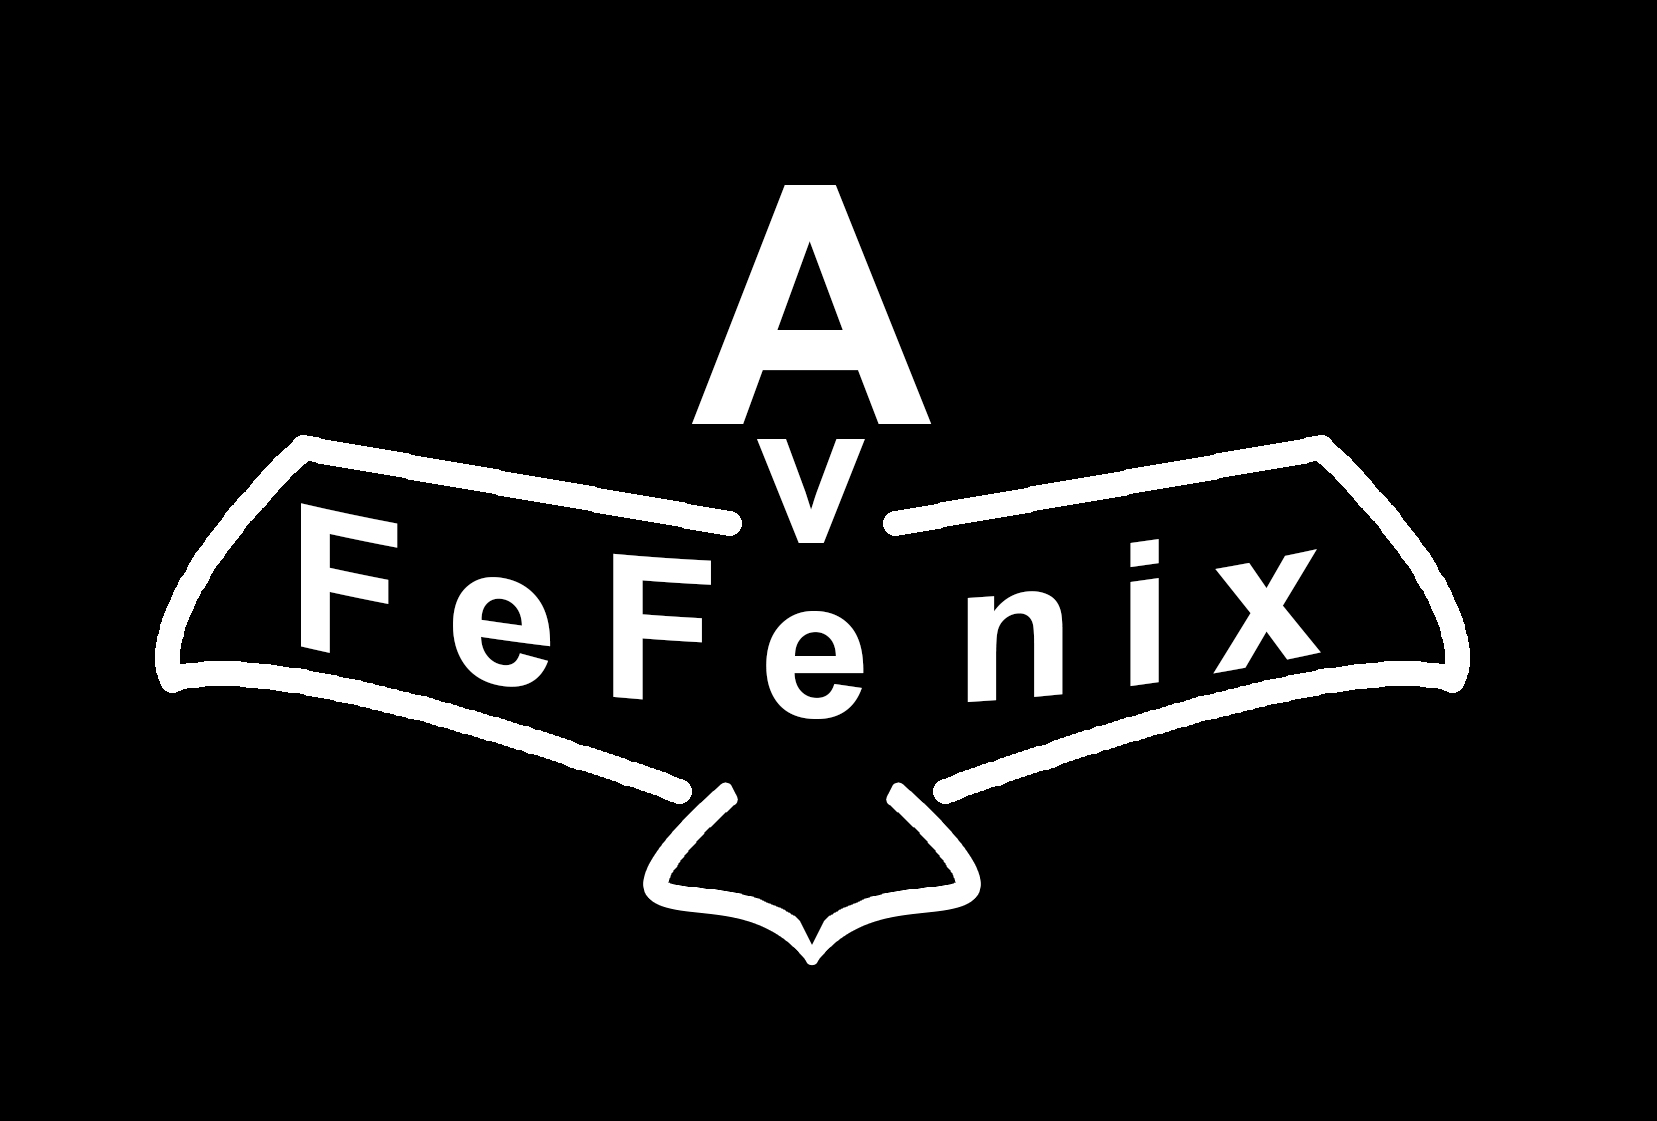 Logo de la marca artística AveFeFénix